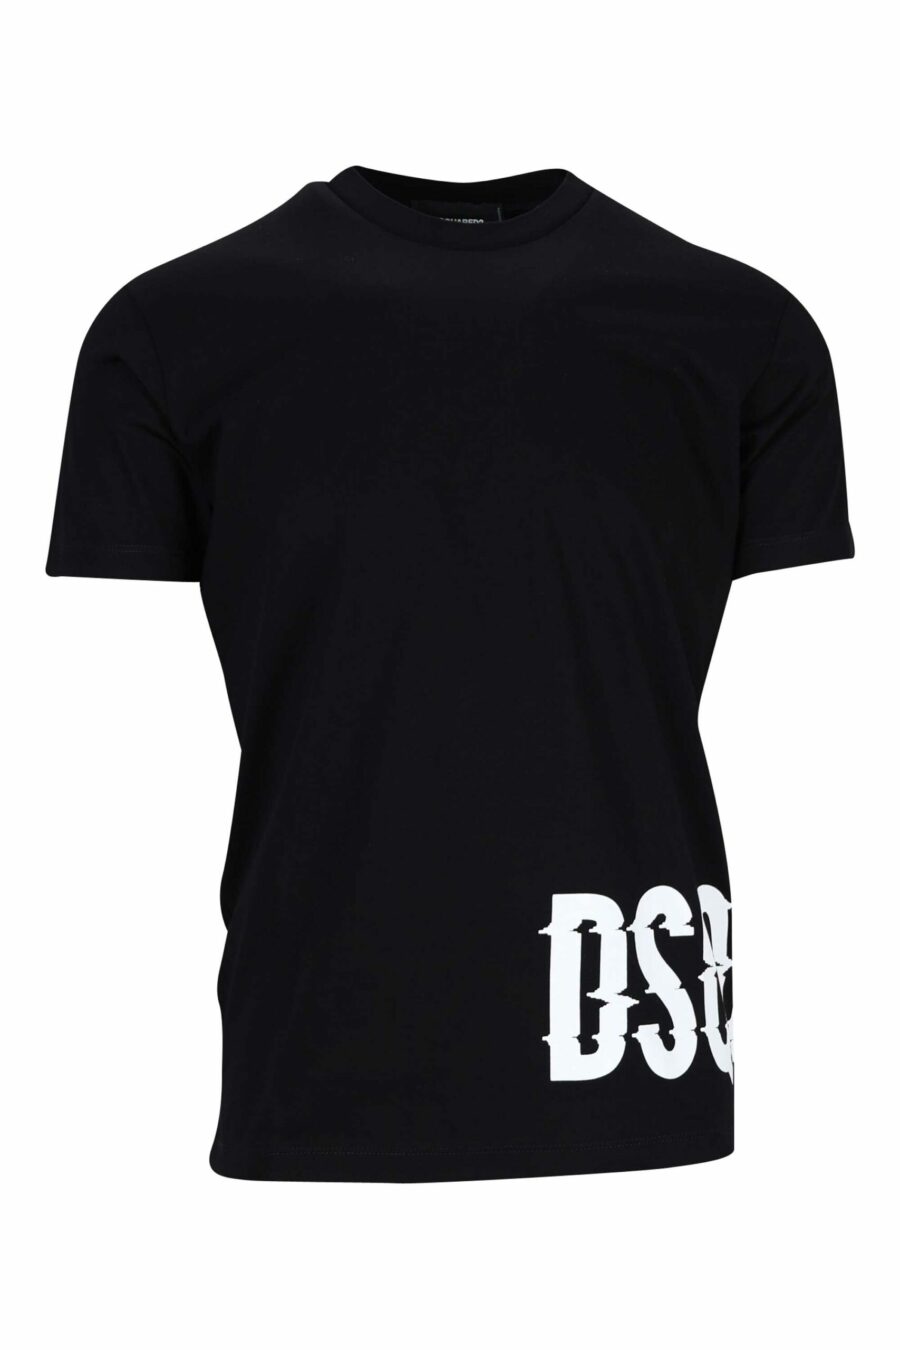 T-shirt noir avec basse noire distordue maxilogue - 8054148332808 scaled